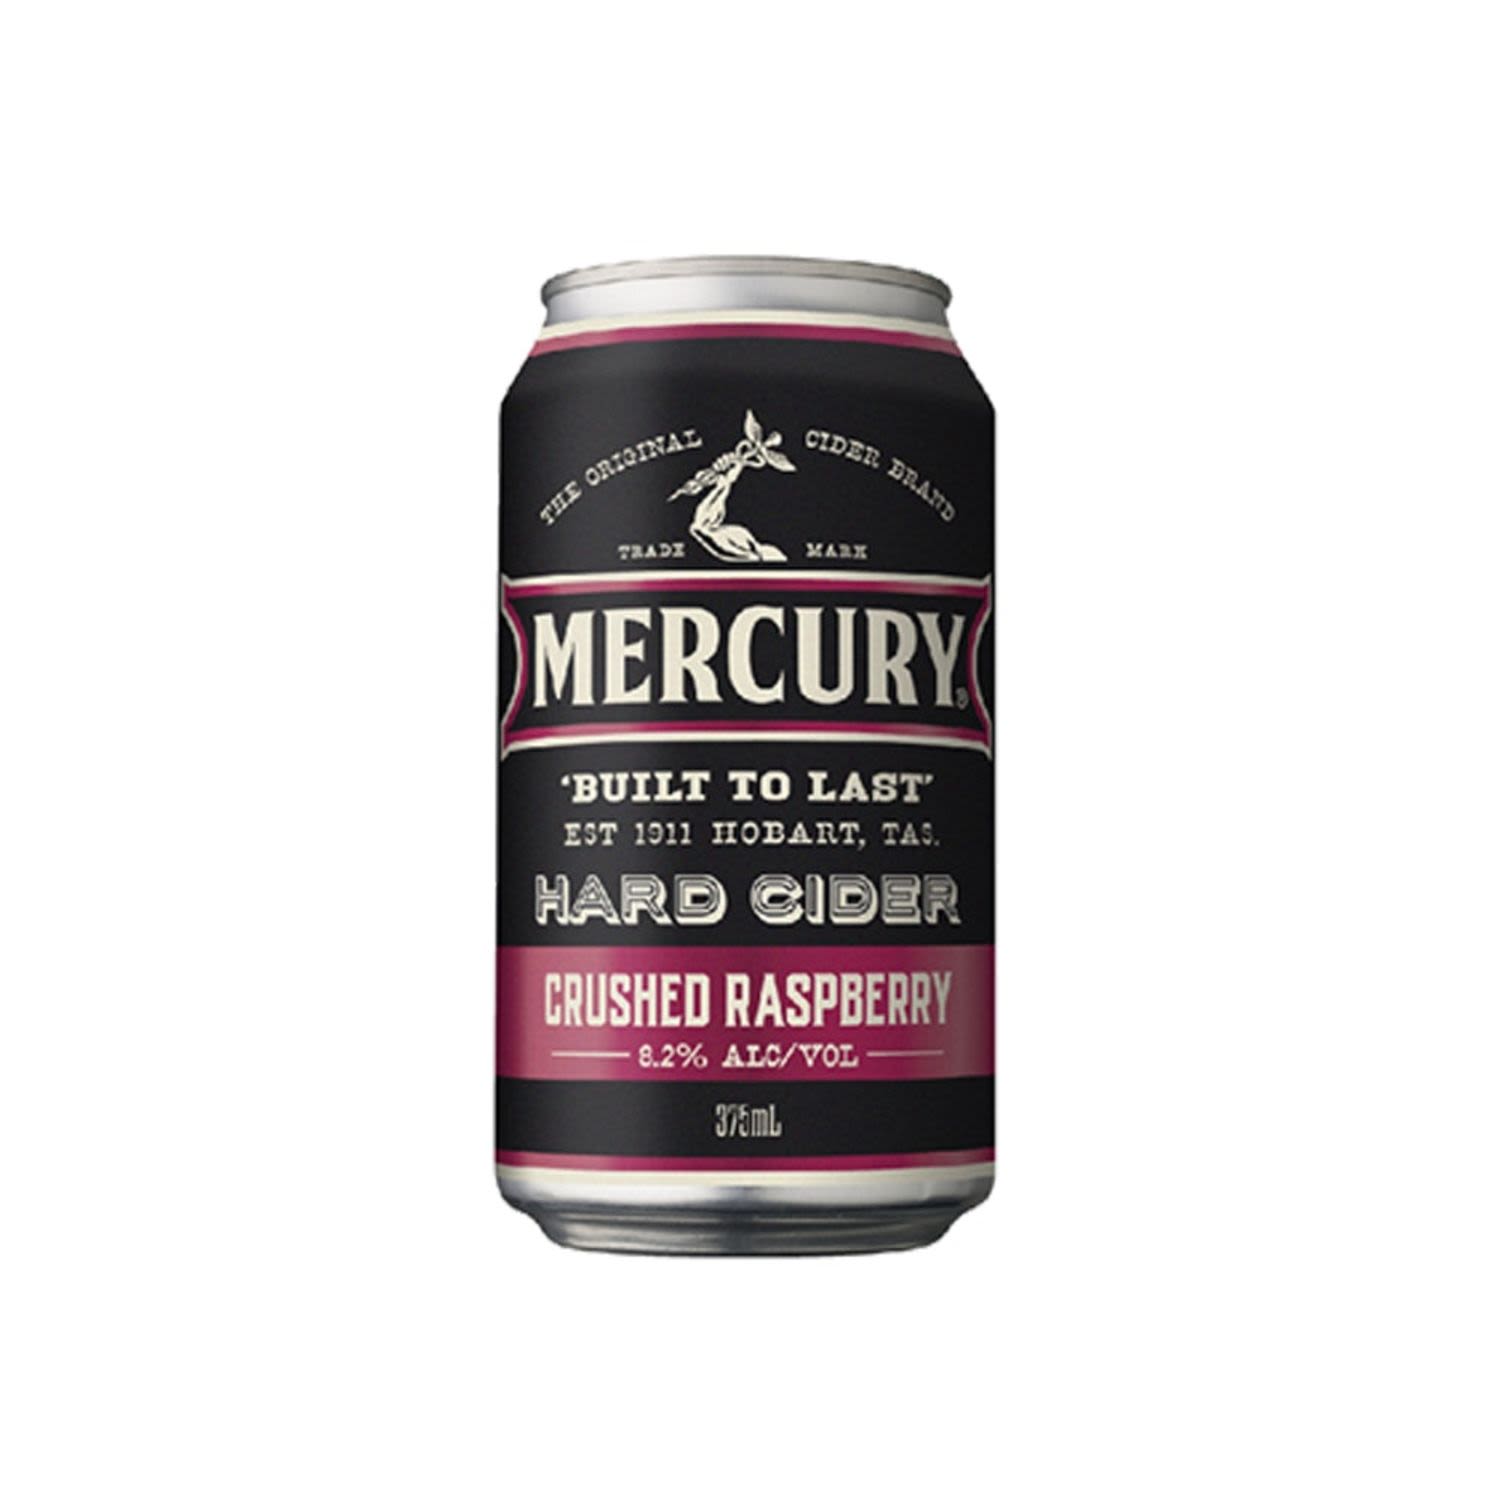 Mercury Hard Cider Crushed Raspberry Can 375mL